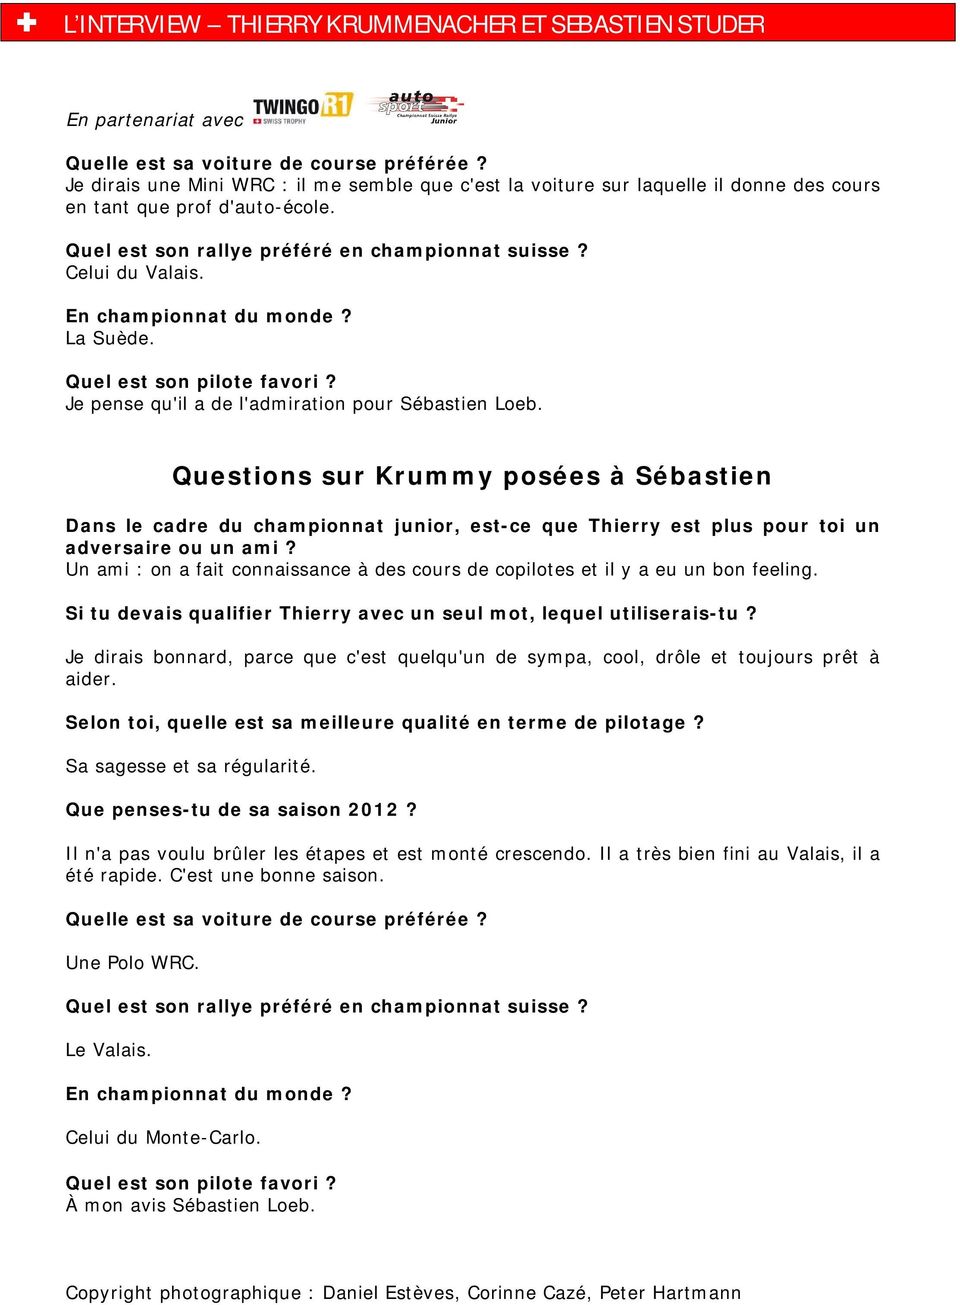 Questions sur Krummy posées à Sébastien Dans le cadre du championnat junior, est-ce que Thierry est plus pour toi un adversaire ou un ami?